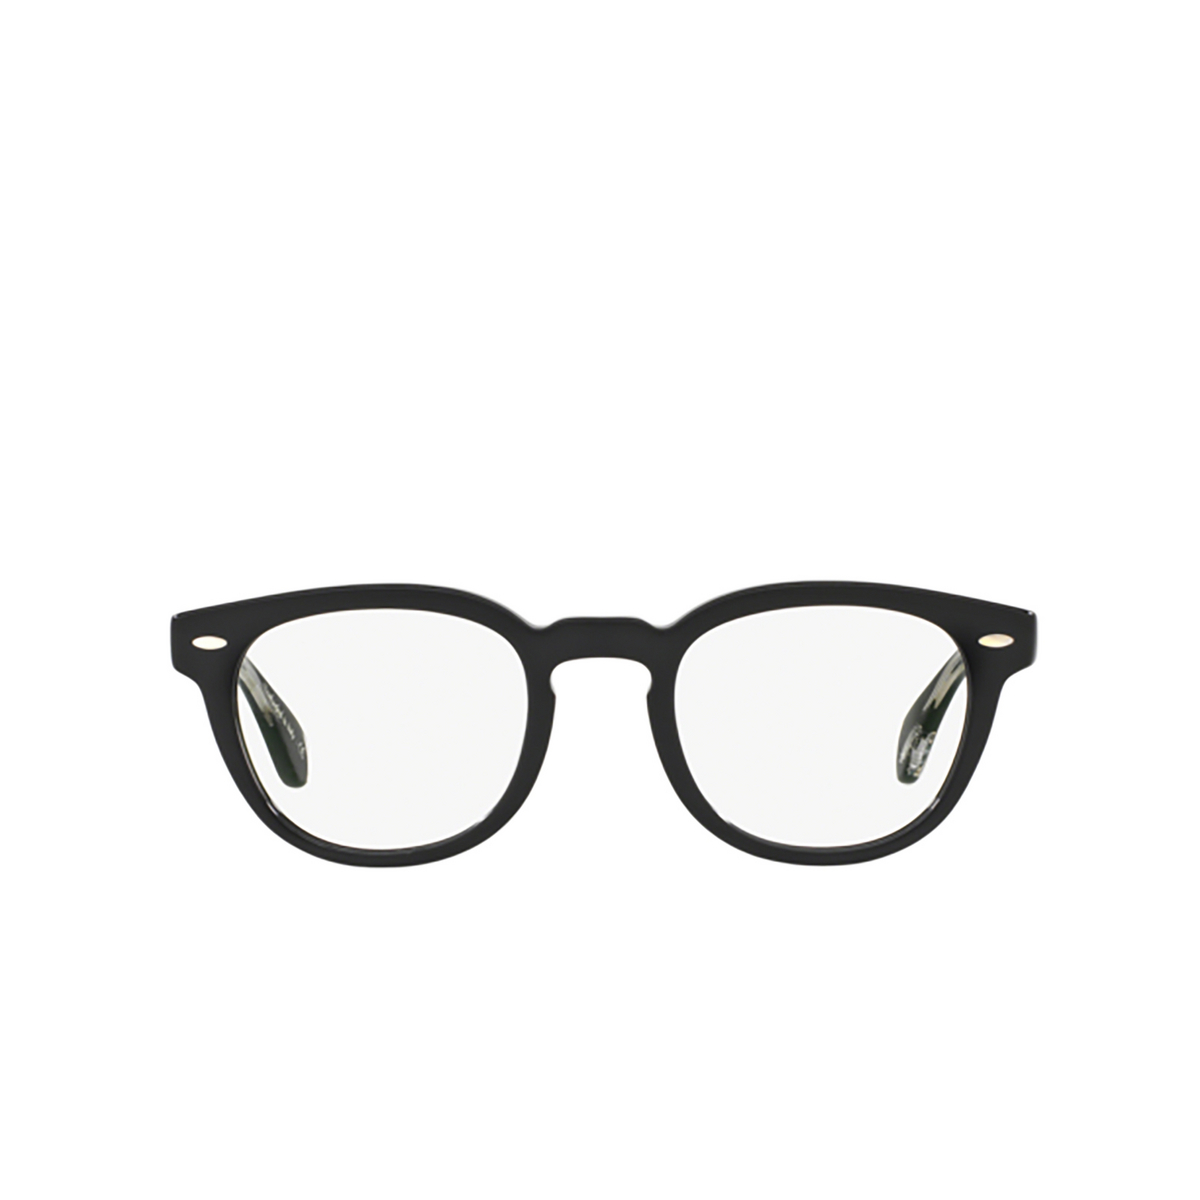 Oliver Peoples SHELDRAKE Eyeglasses 1492 Black - front view